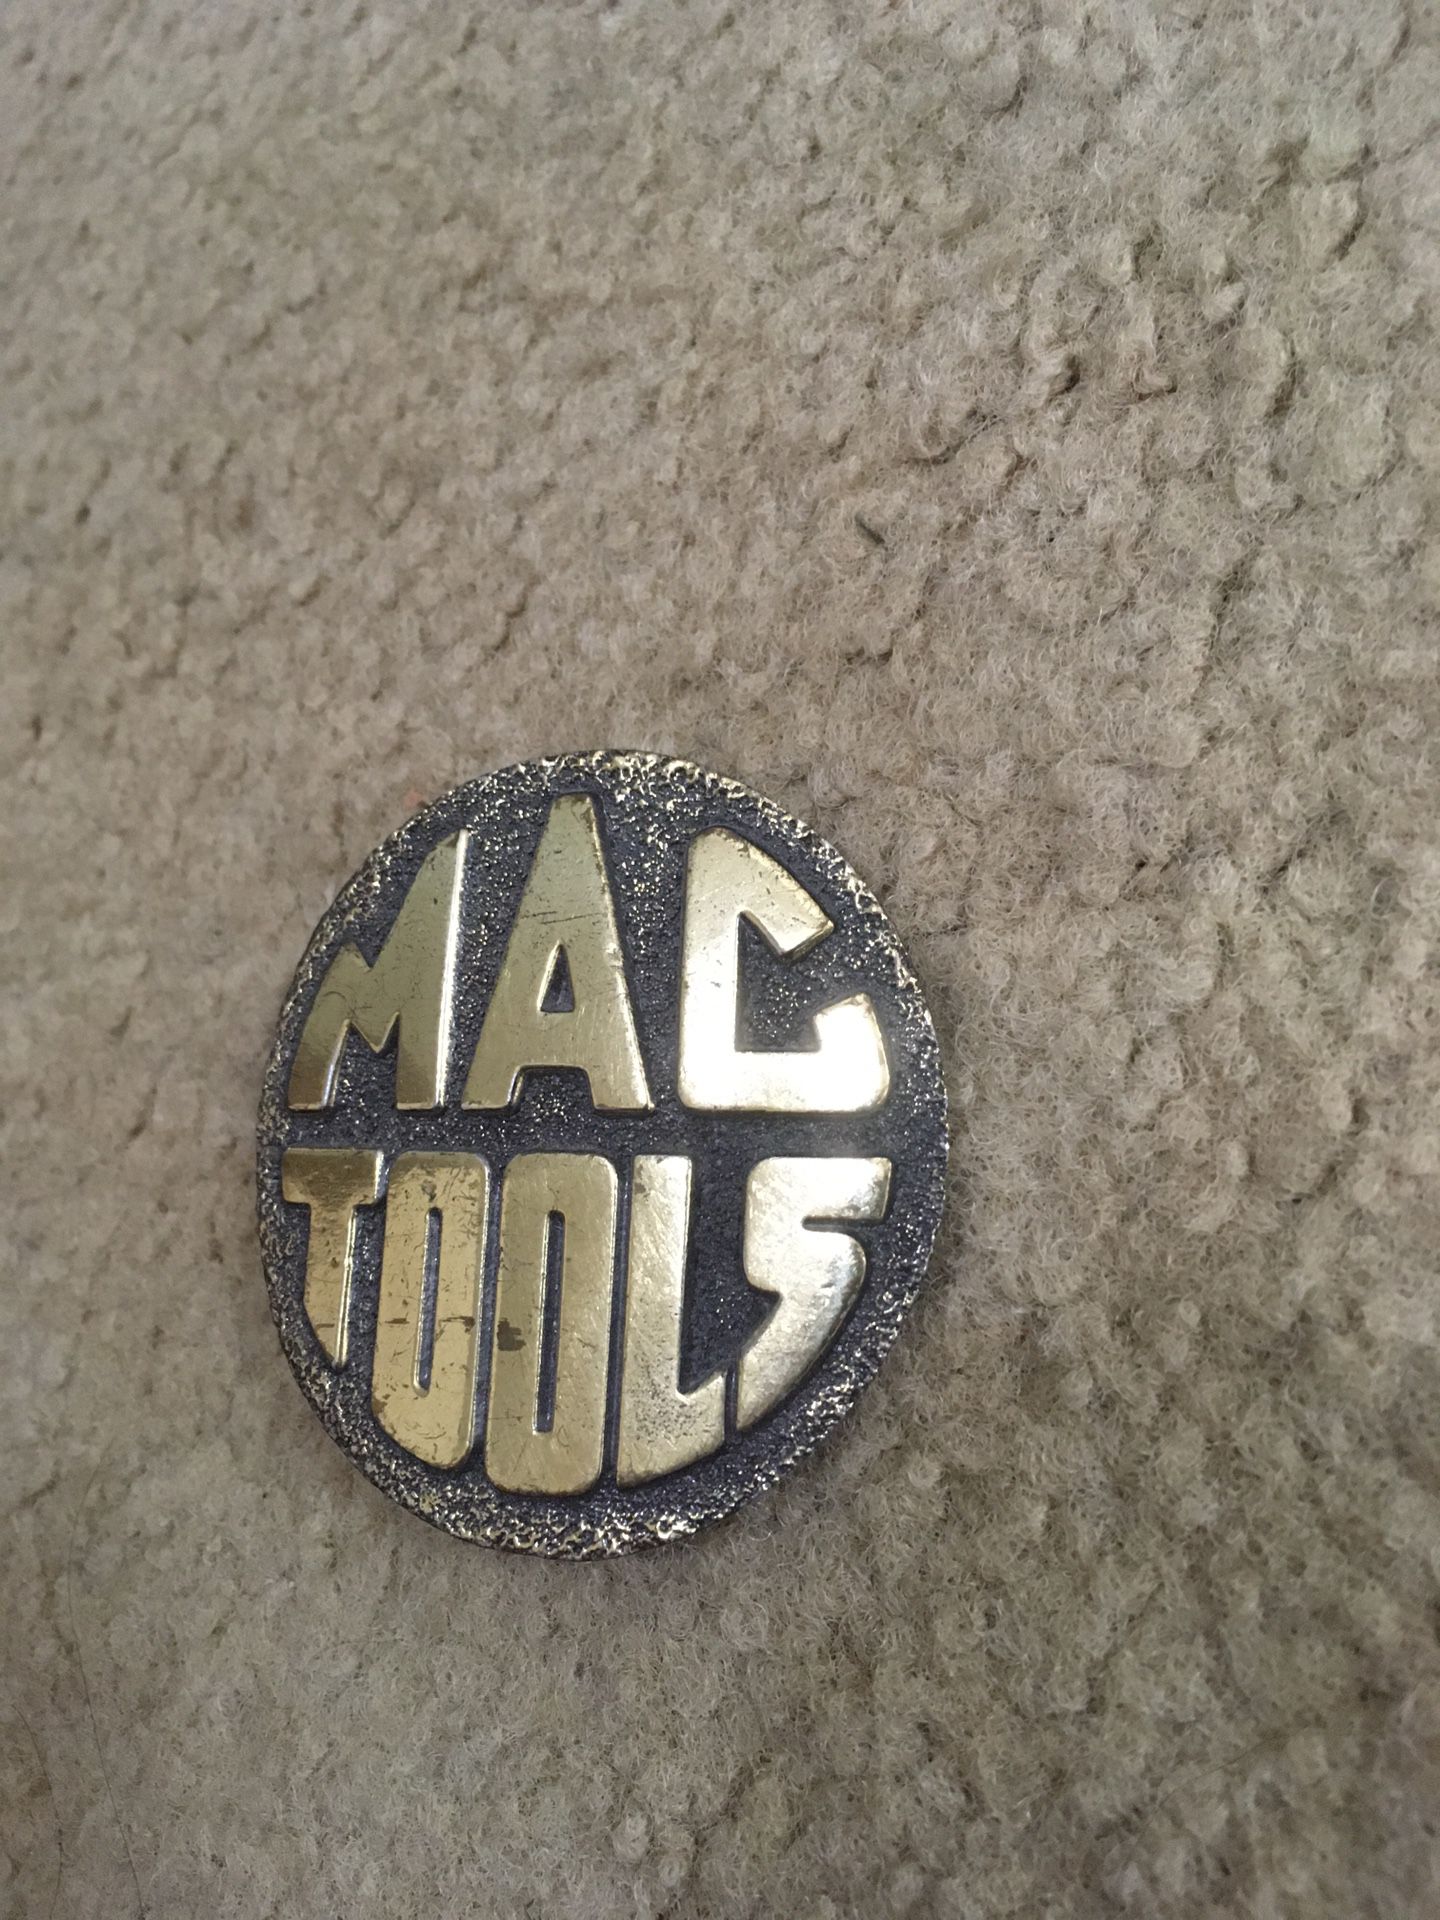 MAC tools buckle